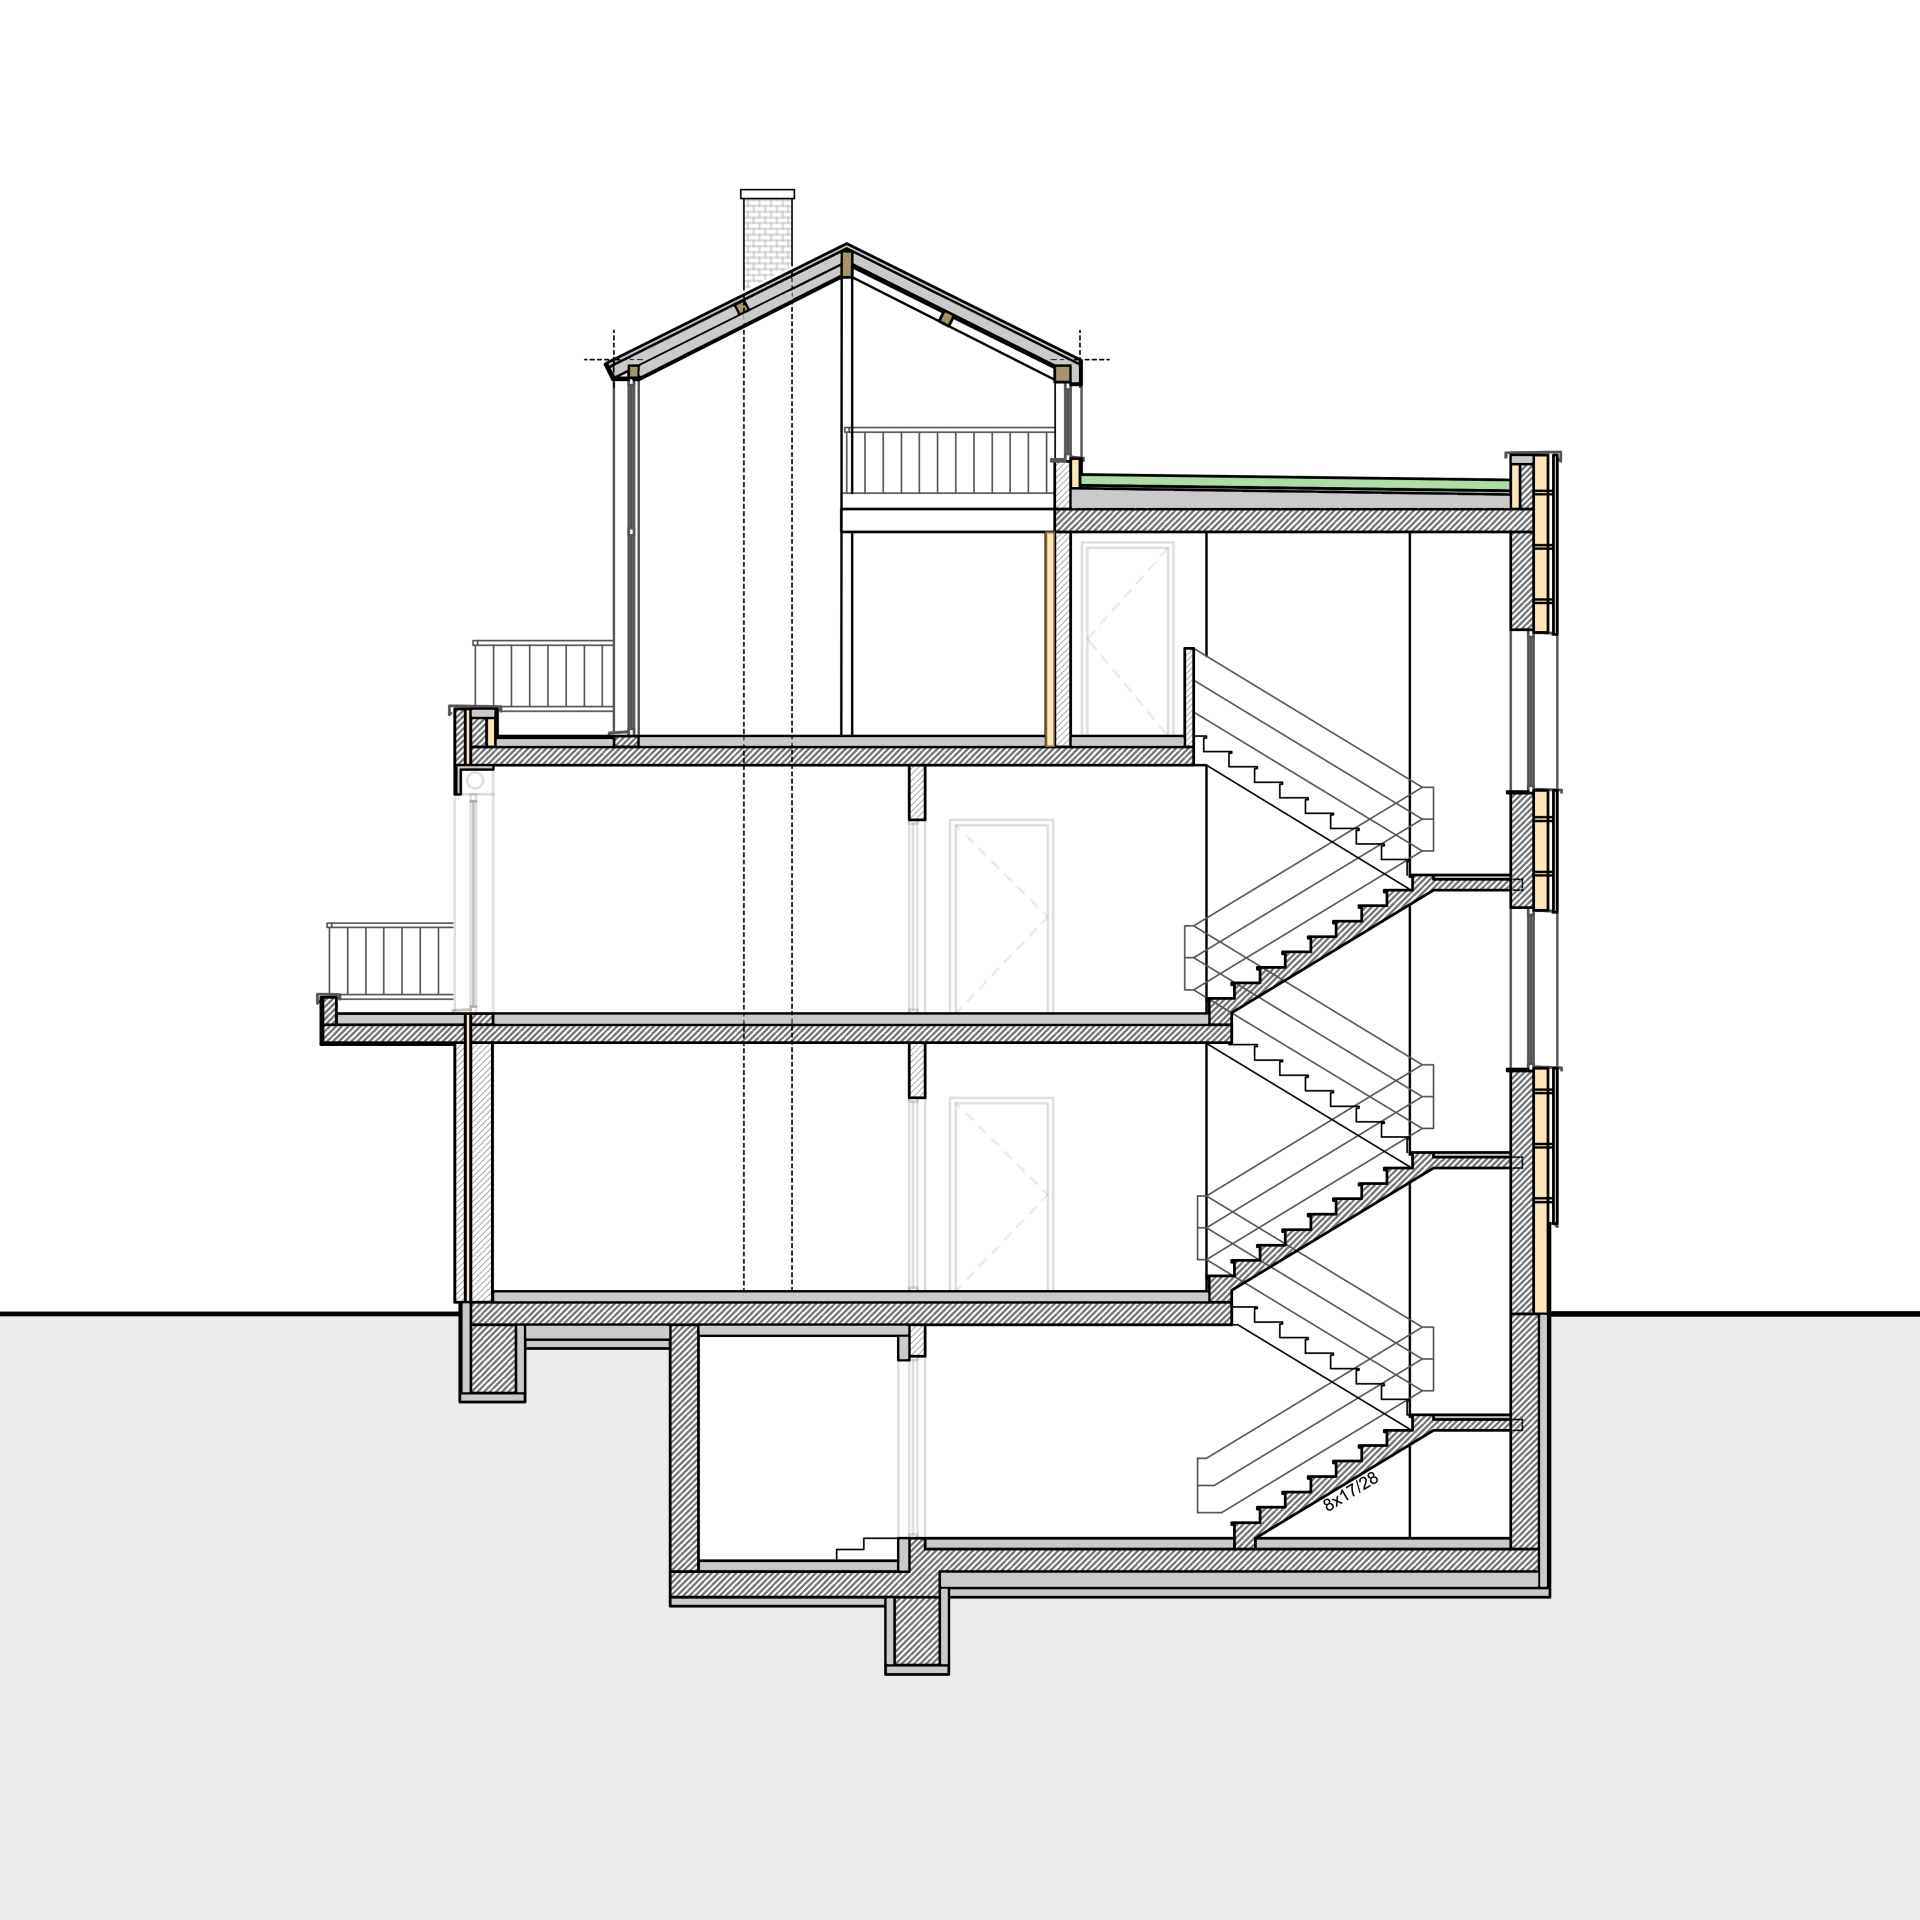 Grafik, Schnitt durch ein Gebäude mit Hervorhebung der Anwendungsgebiete verschiedener Dämmstoffe.